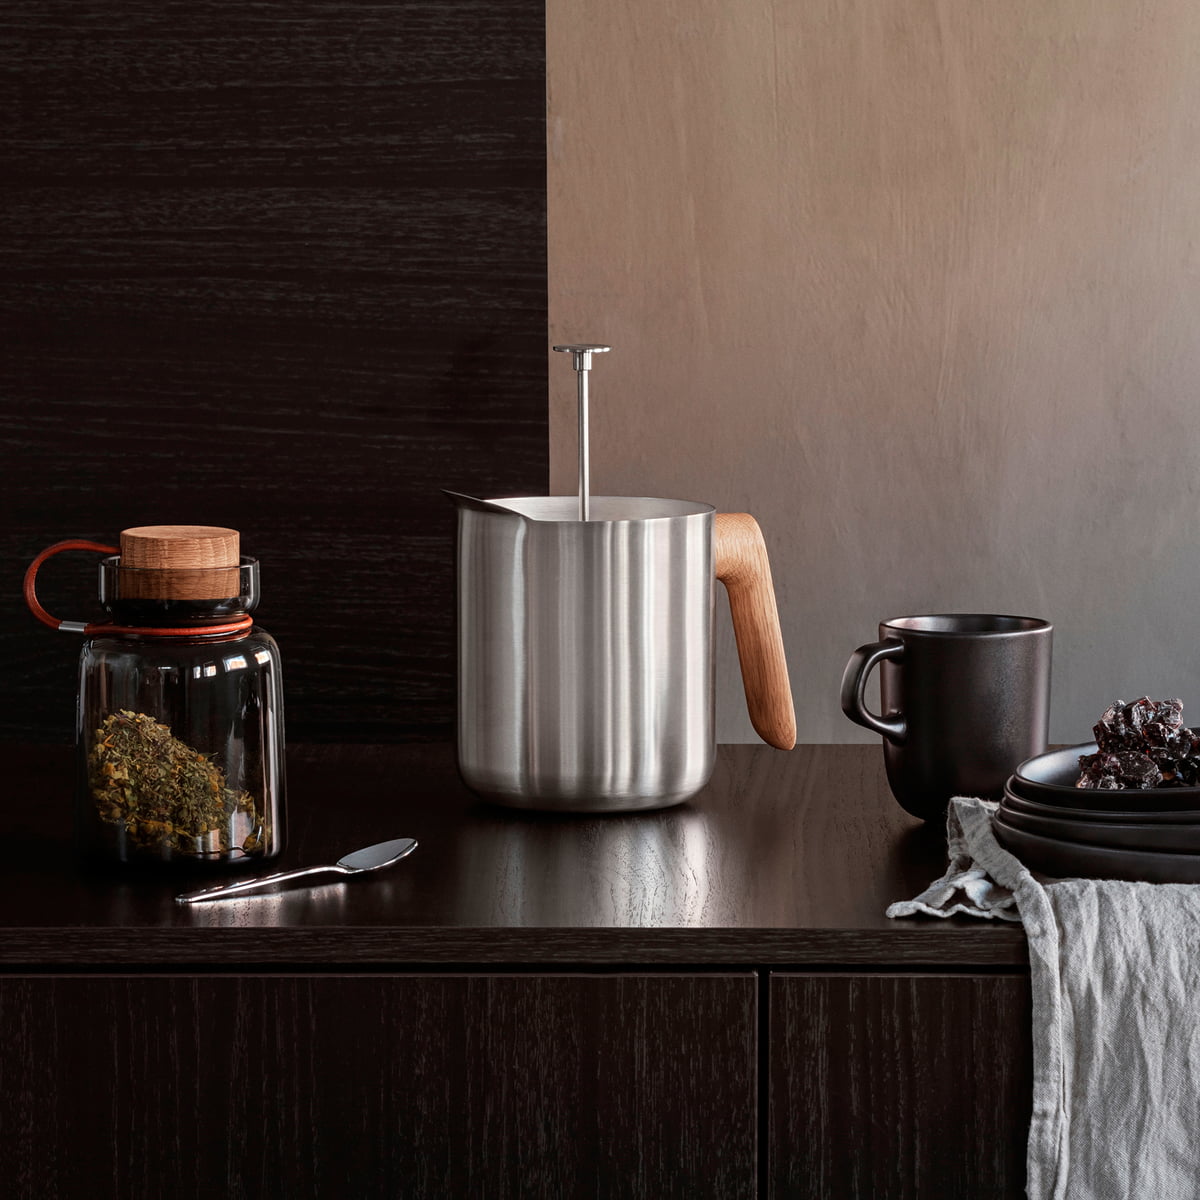 Eva Solo - Nordic Kitchen Tea Thermos, Black